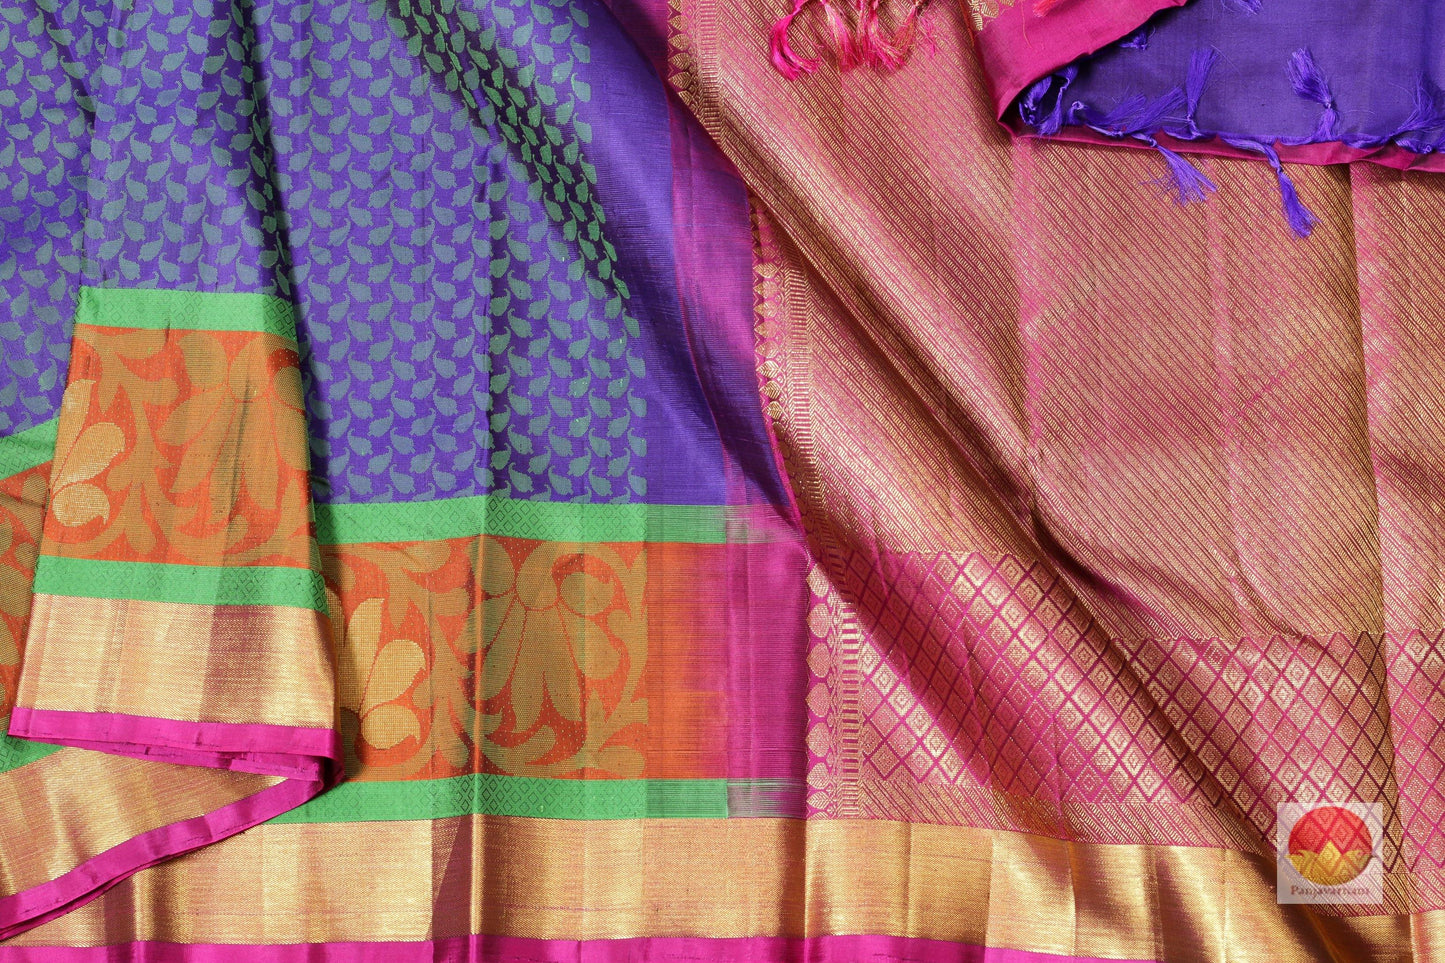 Purple Silk Thread Work - Traditional Design - Pure SIlk Kanjivaram Saree - Pure Zari - PV R2 Archives - Silk Sari - Panjavarnam